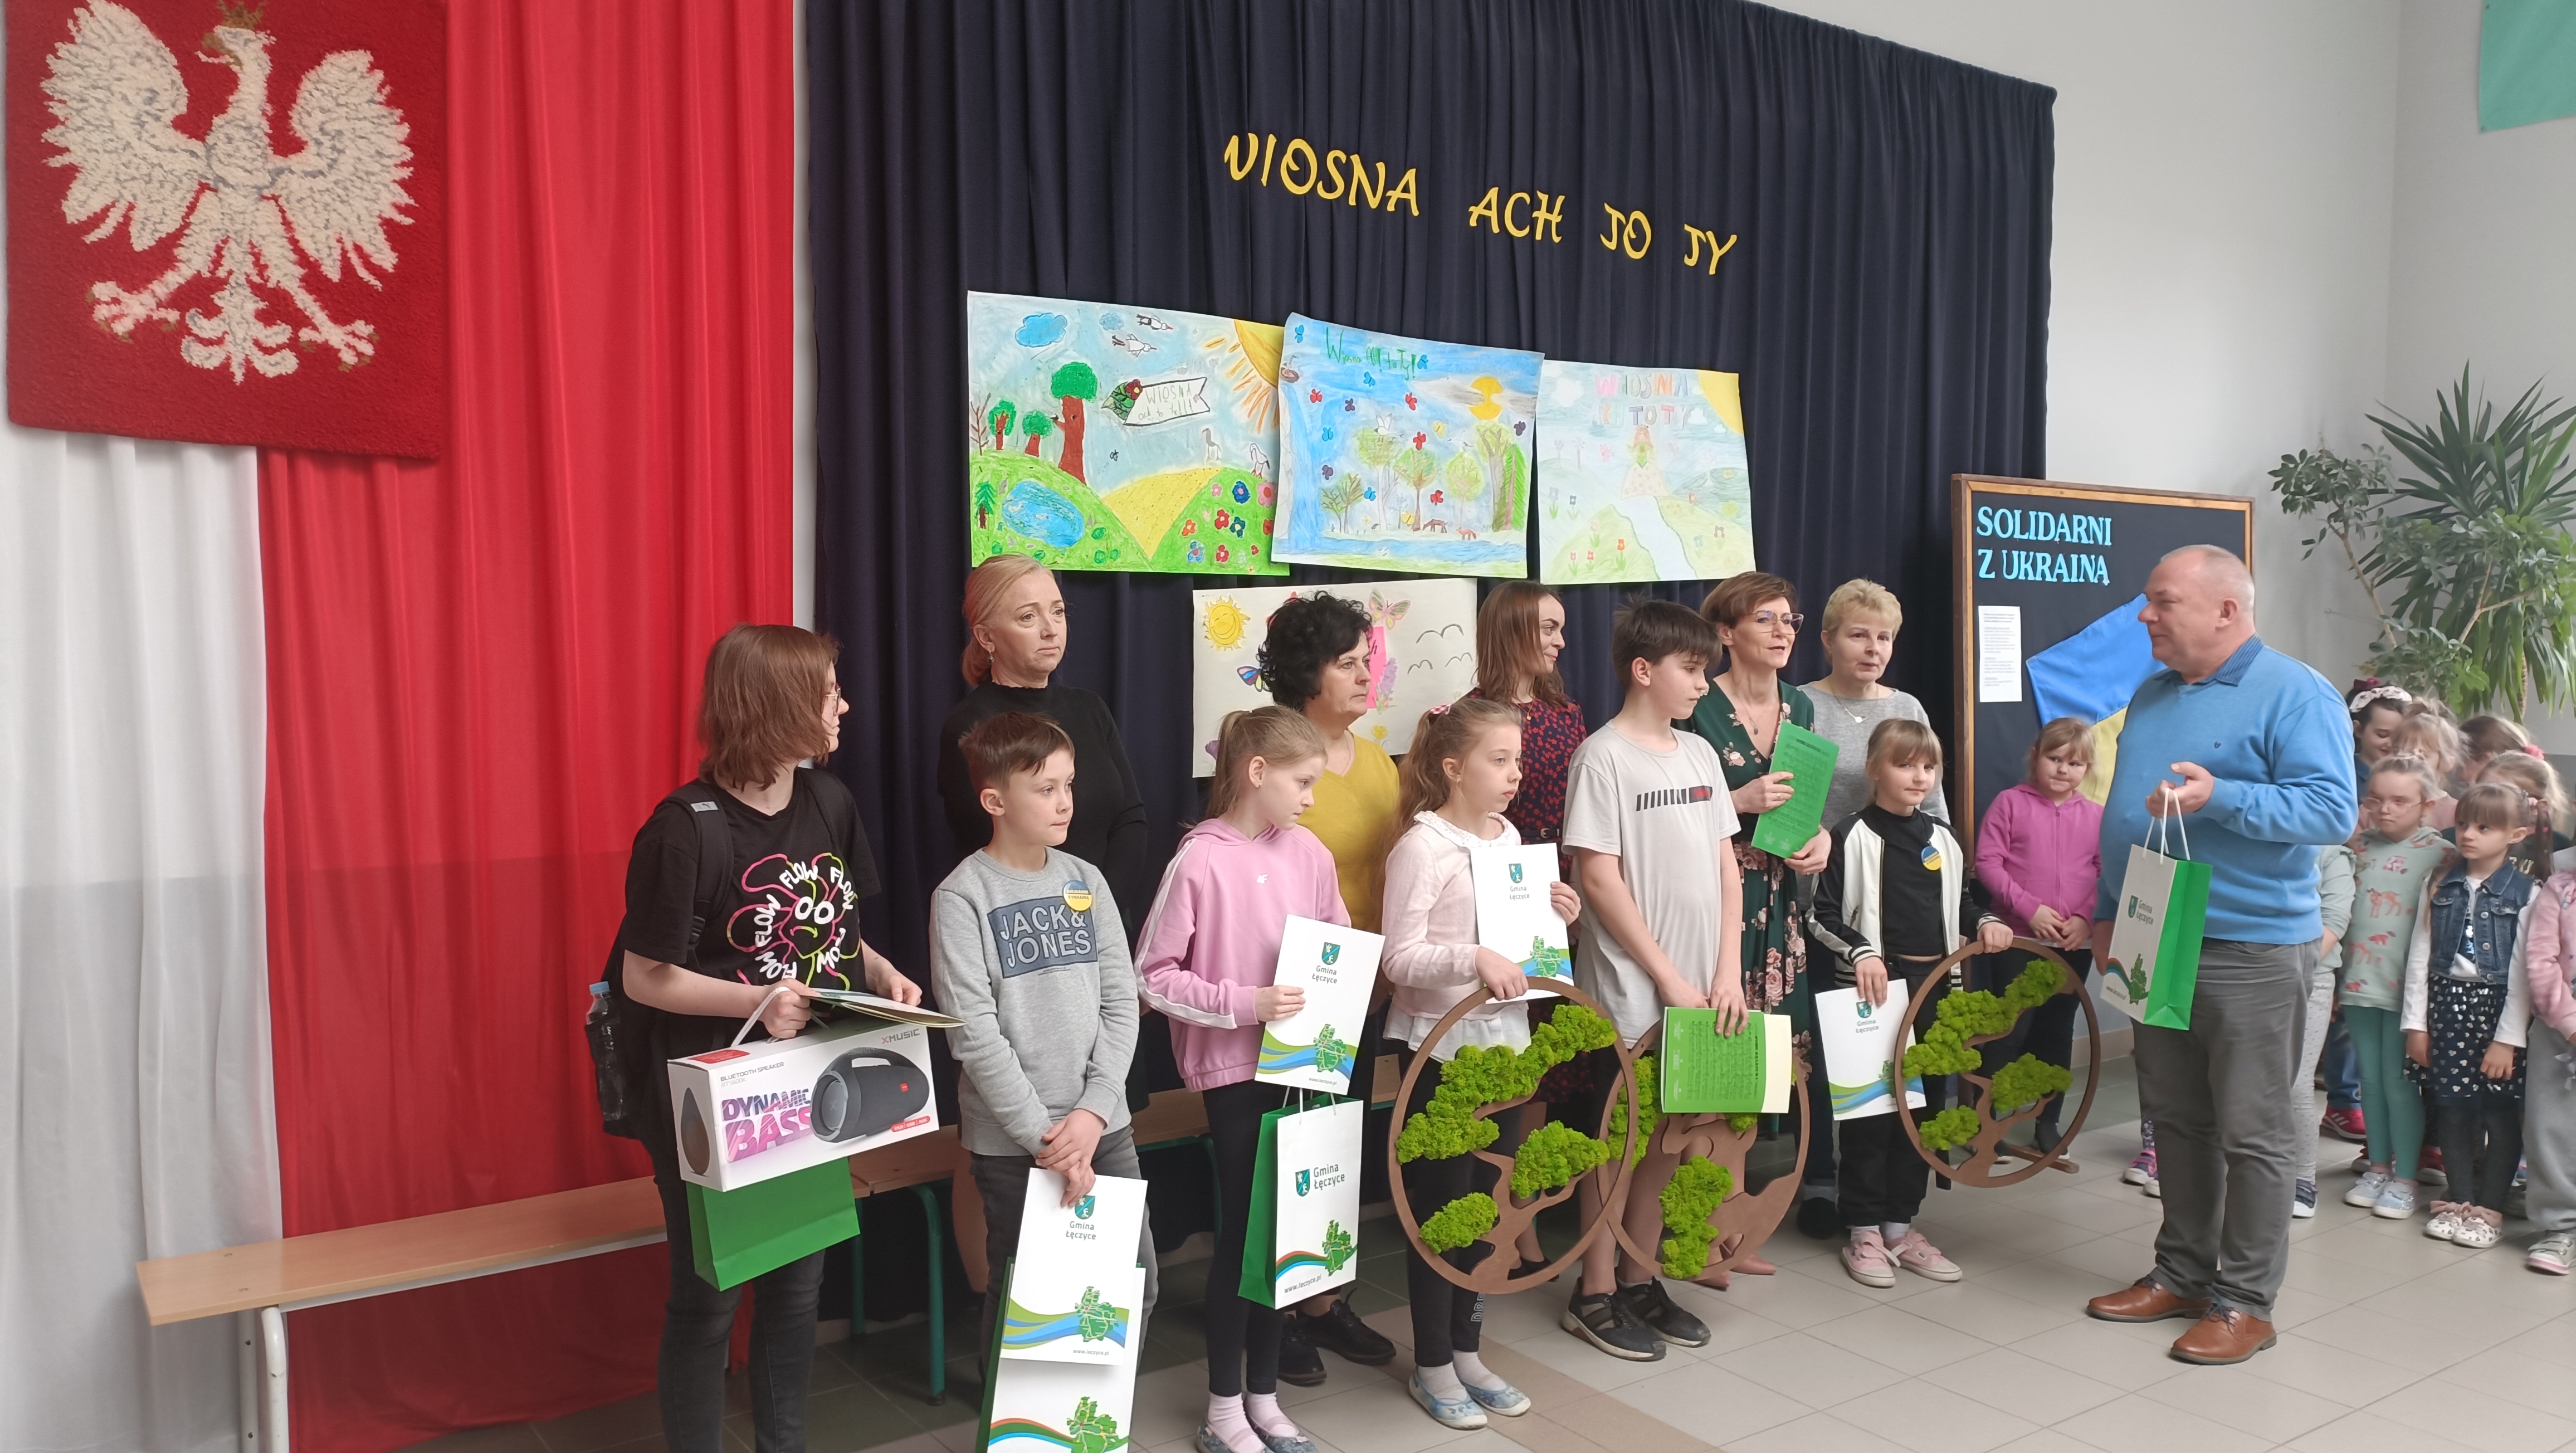 Zdjęcie przedstawiające dzieci i dorosłych na wręczeniu nagród w konkursie, w tle Godło Polski, tekst: " Wiosna Ach To Ty" pod nim narysowane pejzaże wiosny